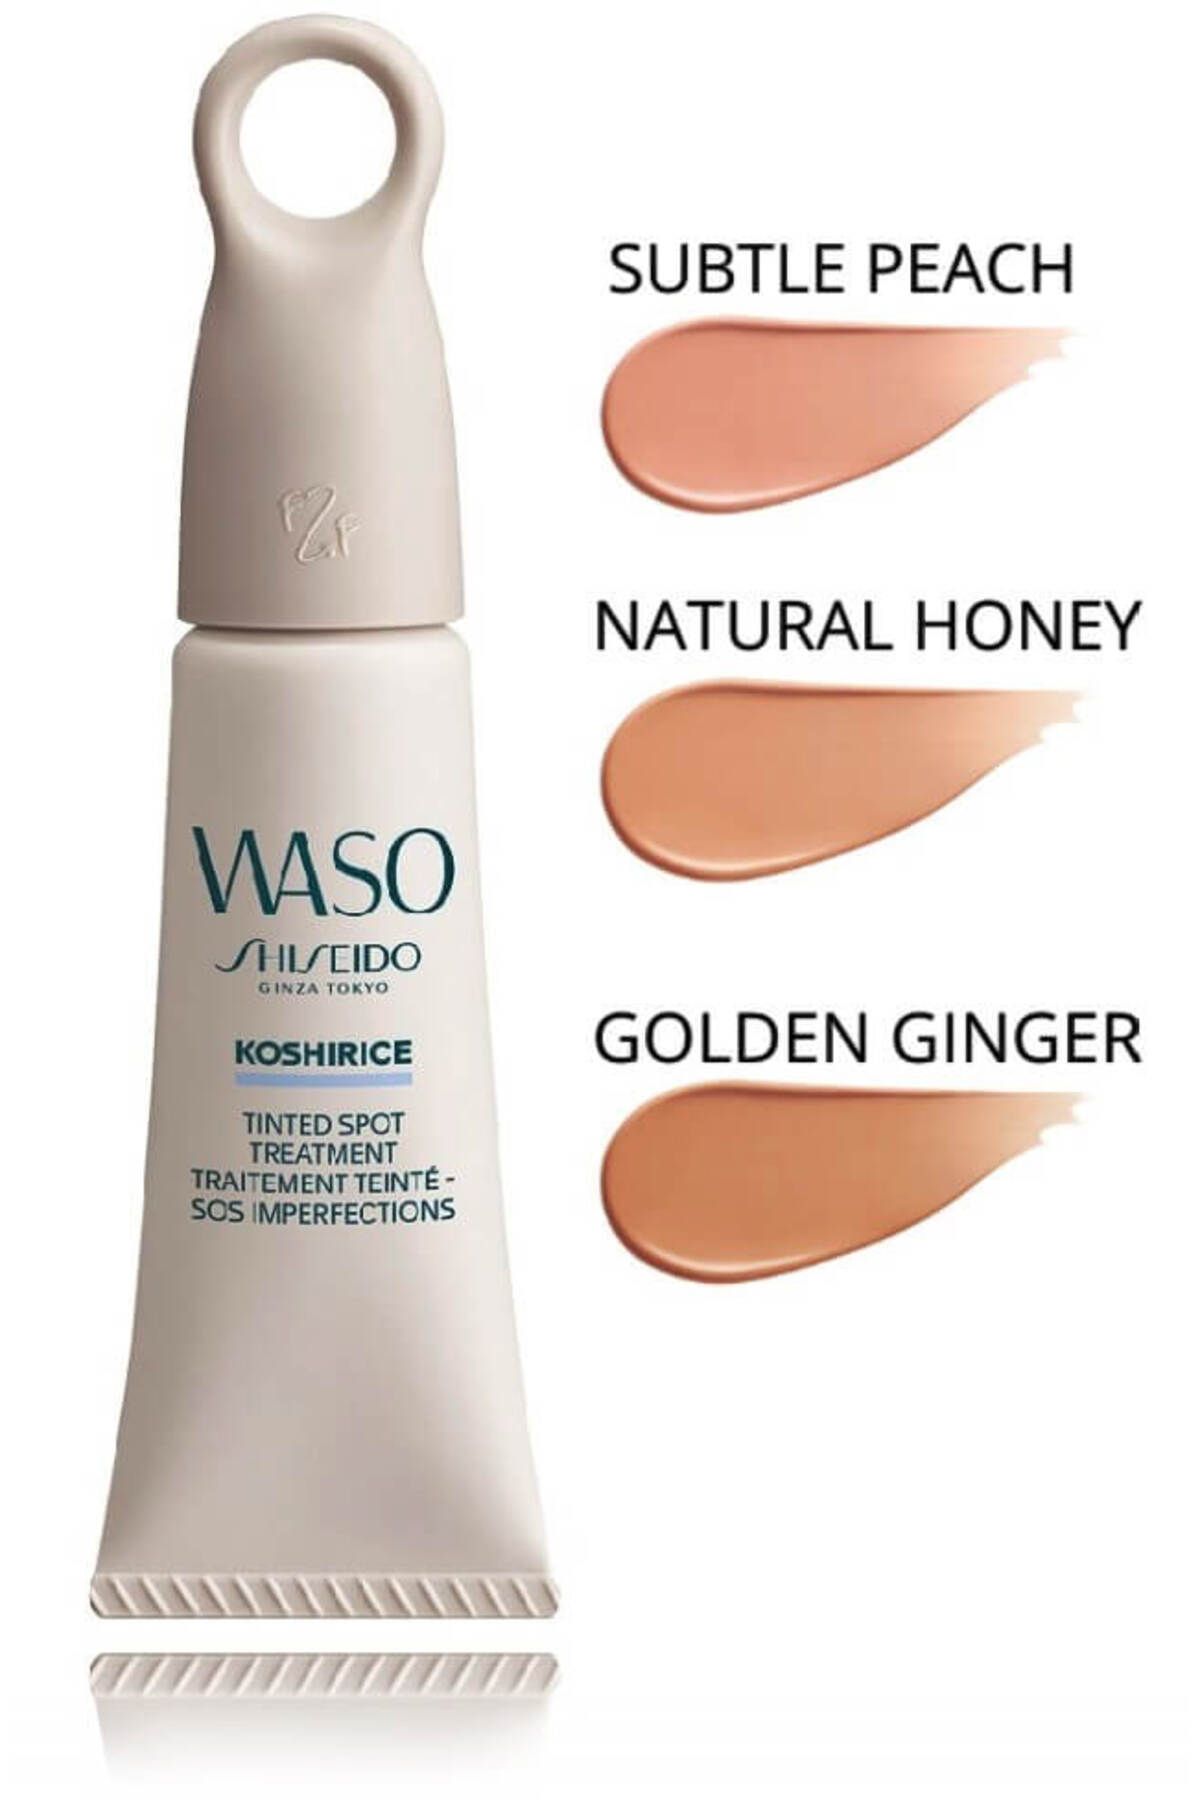 Shiseido WASO - Hibrit Leke Ve Sivilce Tedavisi Yapan Kapatıcı Etkili Lokal Bakım Kremi 8 ml